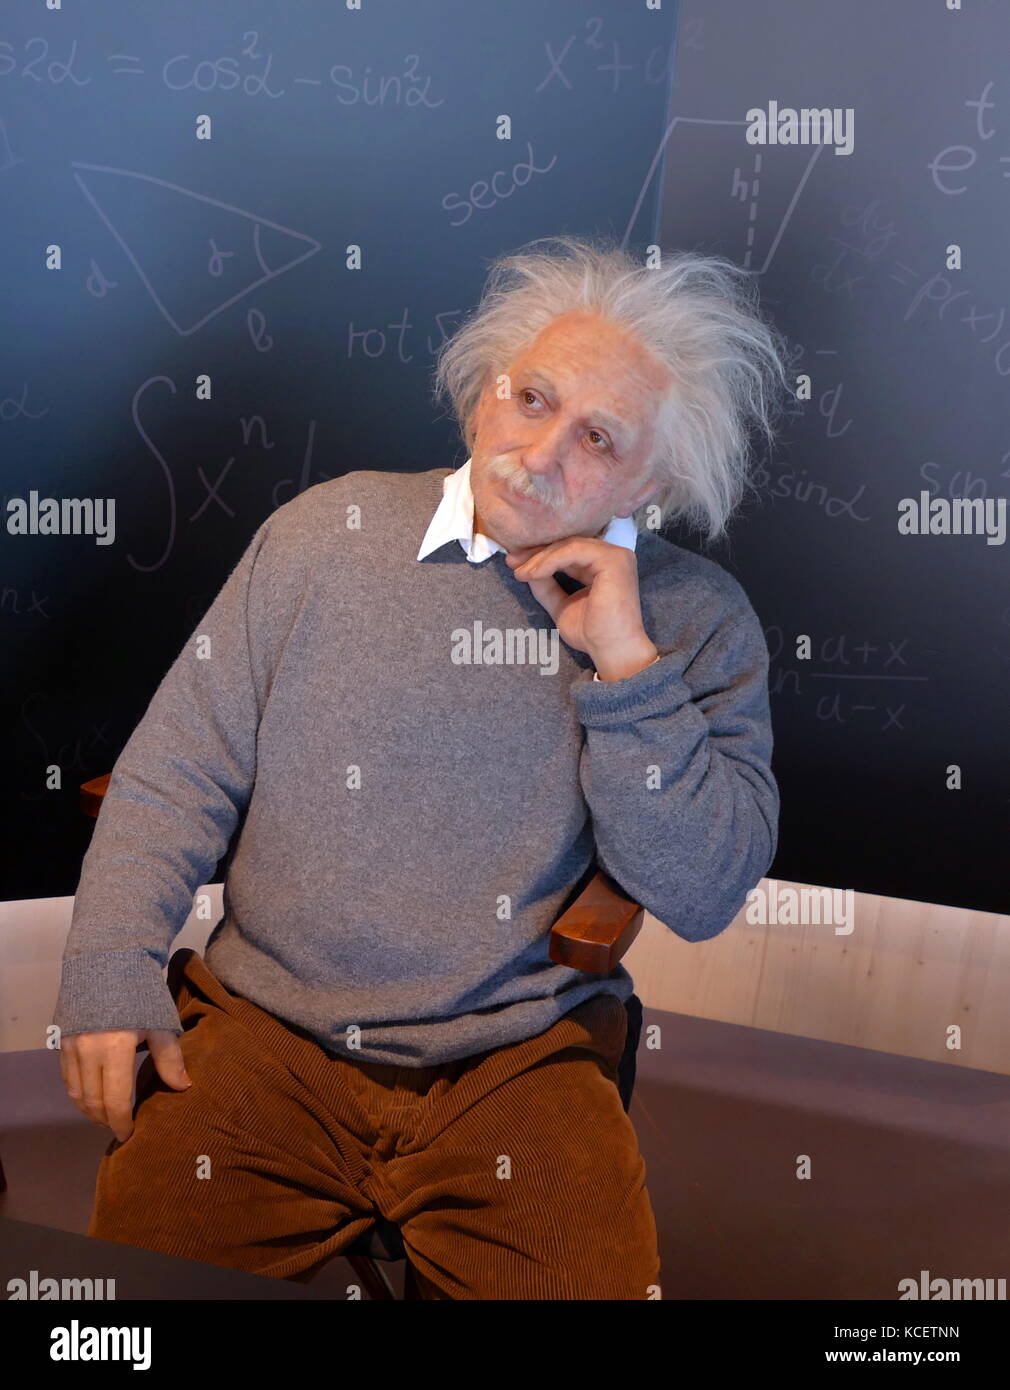 Sculpture de cire) cire (d'Albert Einstein (1879 - 1955), un physicien théorique. Il a développé la théorie générale de la relativité, l'un des deux piliers de la physique moderne (à côté de la mécanique quantique). CosmoCaixa Museum, Barcelone, Espagne Banque D'Images